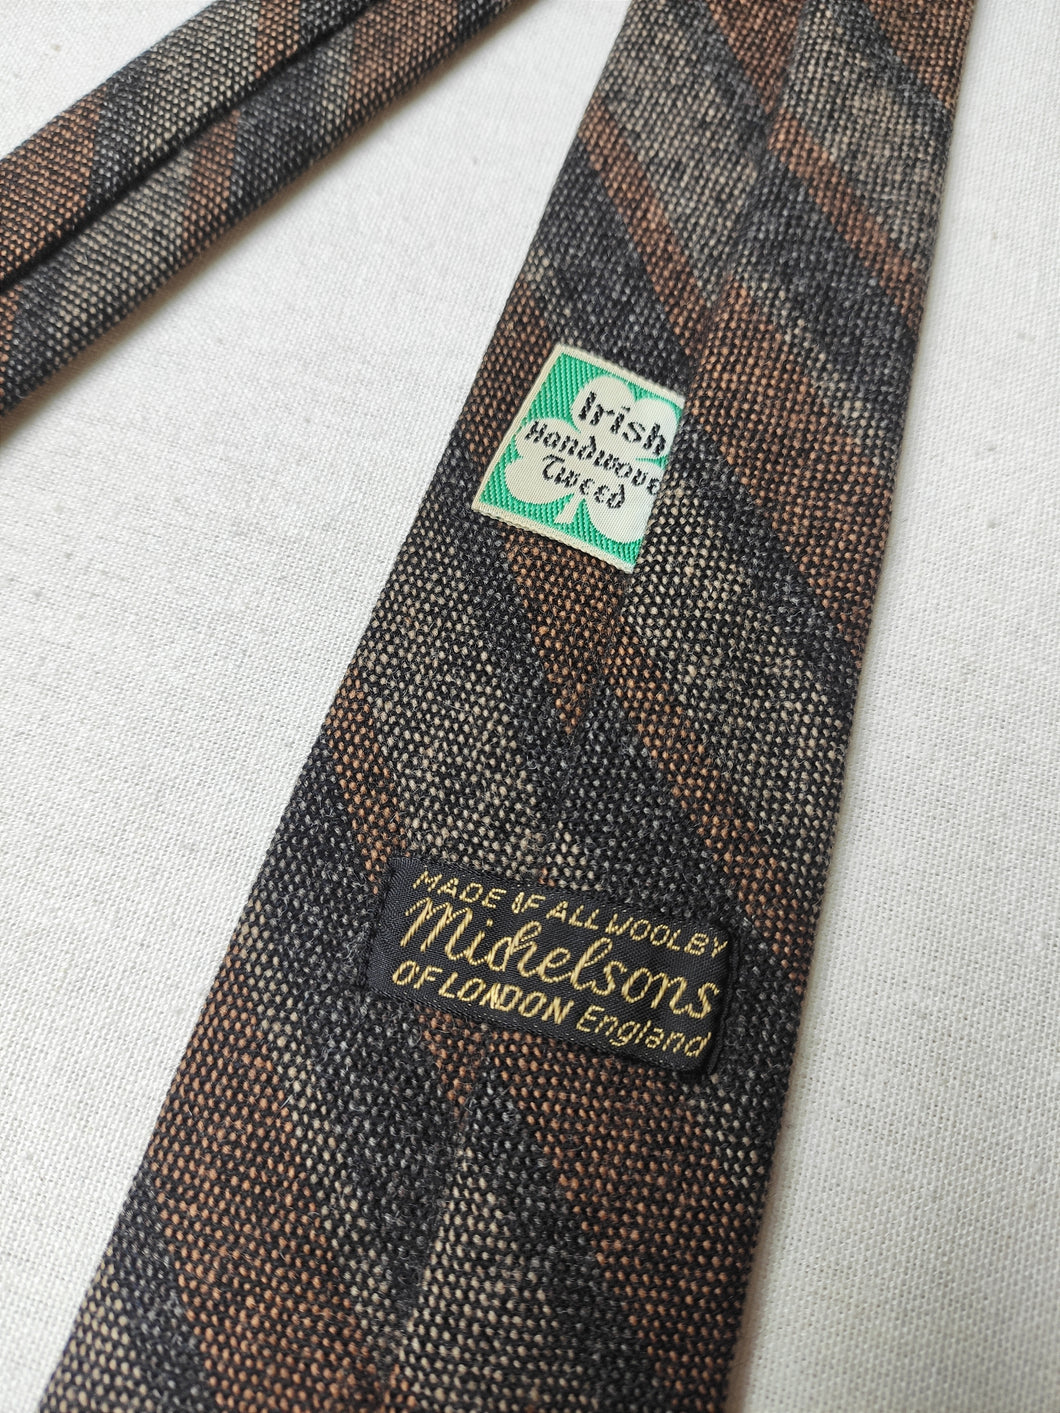 Michelsons of London cravate vintage en pure laine Irish Tweed